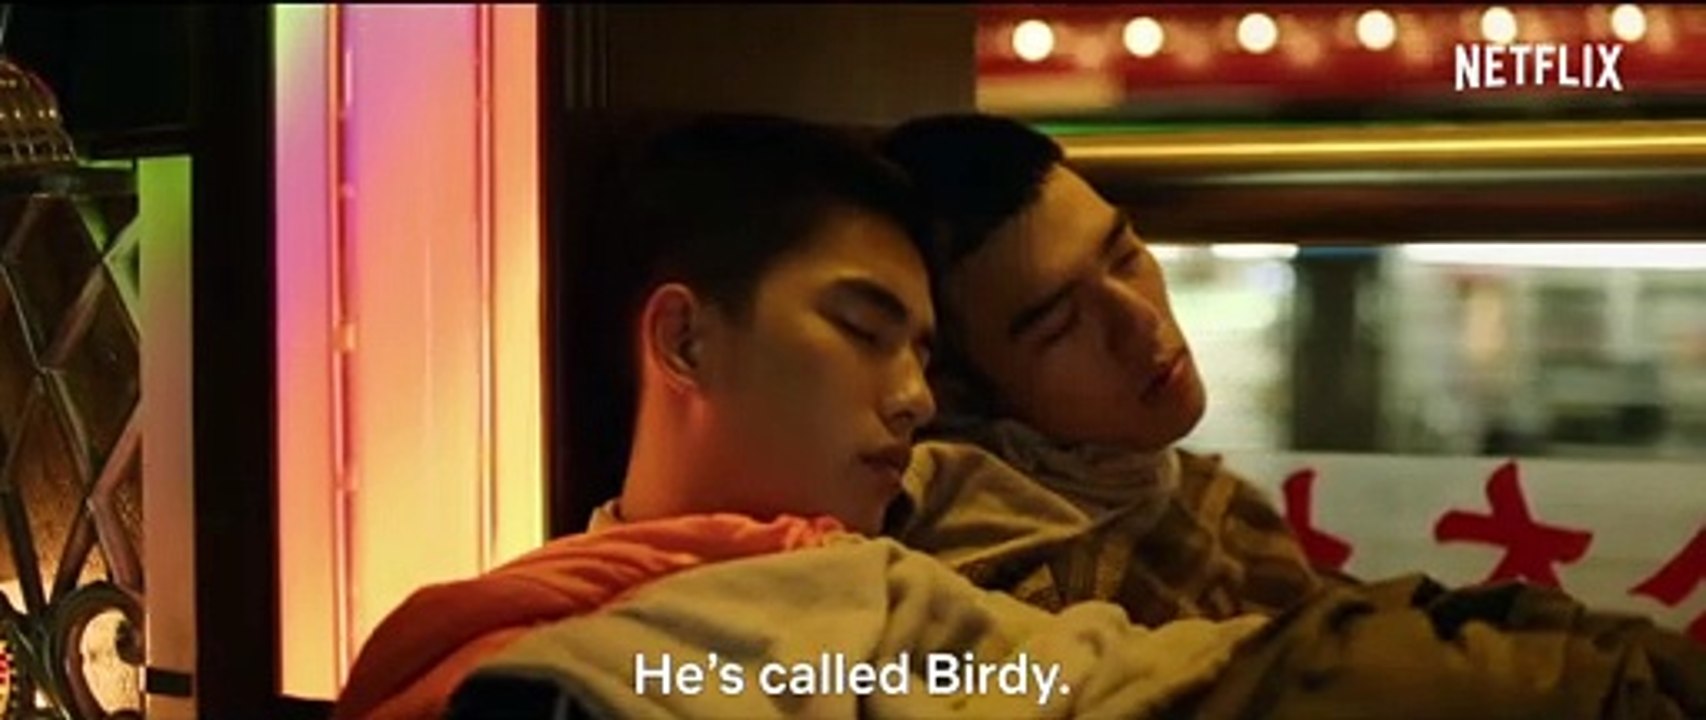 O filme Your Name Engraved Herein já - Coreanas de Taubaté